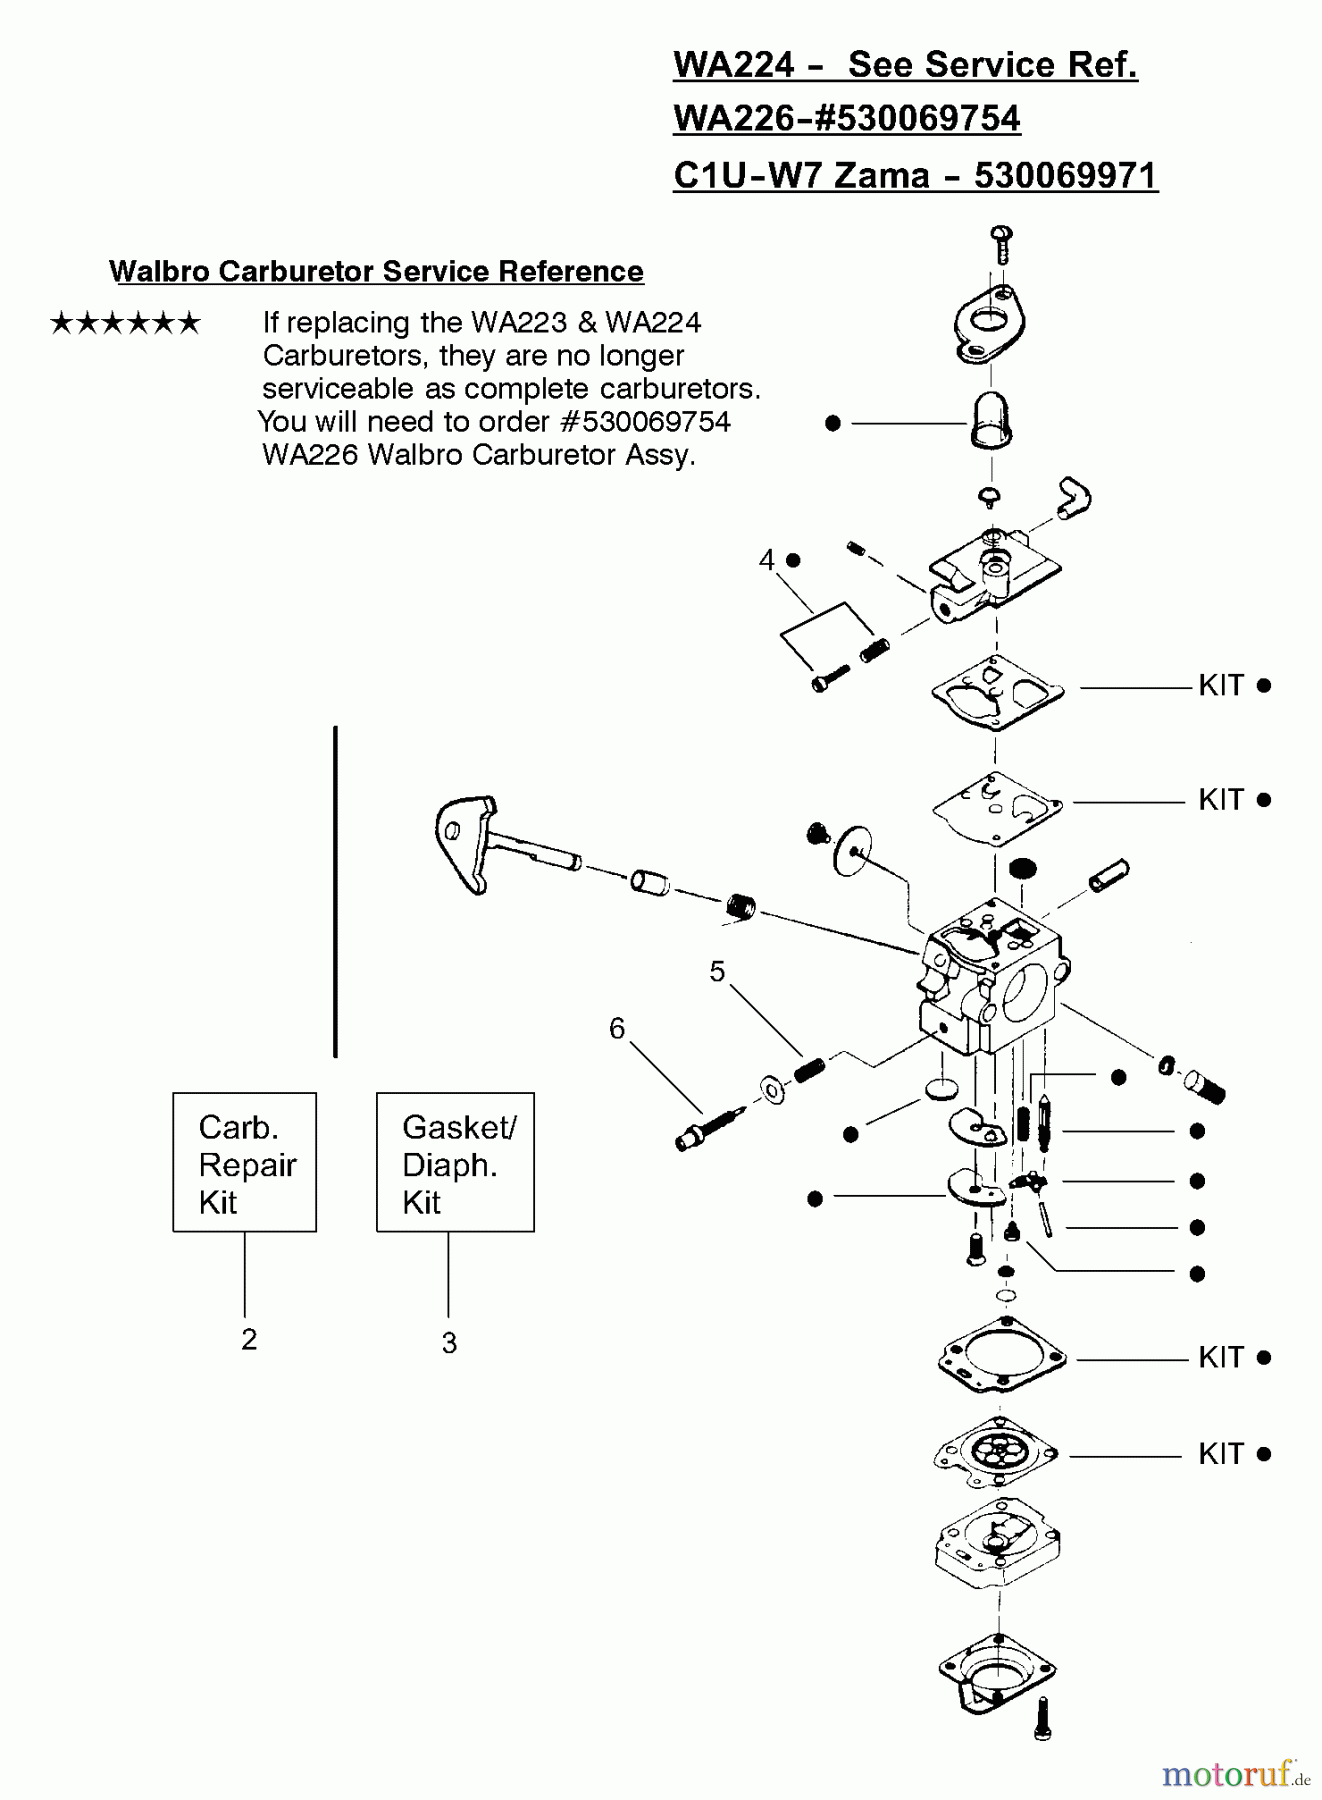  Poulan / Weed Eater Motorsensen, Trimmer XT25 - Weed Eater String Trimmer Carburetor Assembly (WA224), (WA226) P/N 530069754, (Zama C1U-W7) P/N 530069971